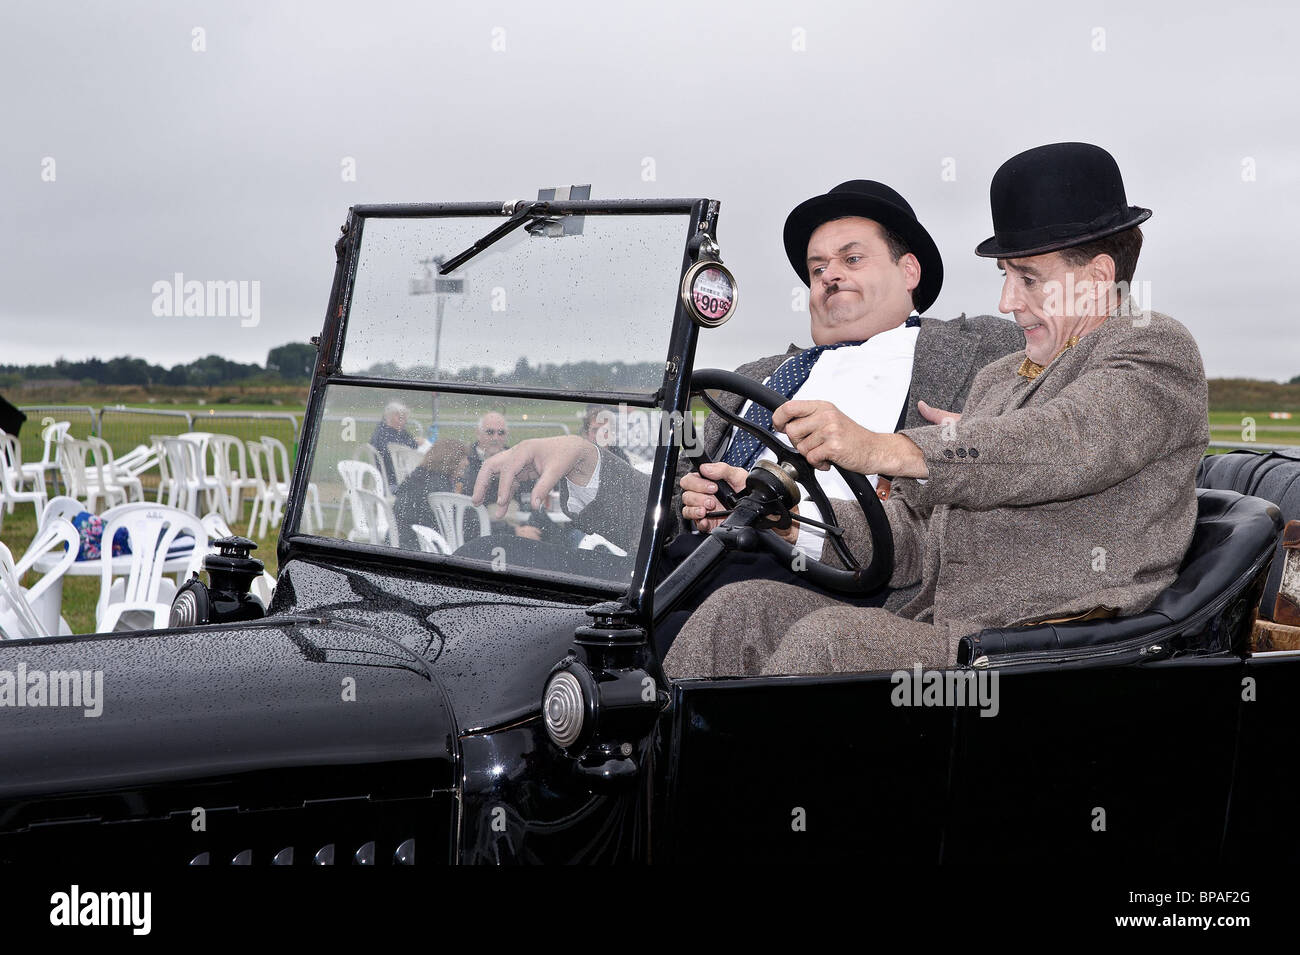 Haurel et Lardy (Laurel et Hardy) Hommage à la Royal Air Forces Association Airshow à Shoreham Airport. Jour 1. 22 août 2010. Banque D'Images